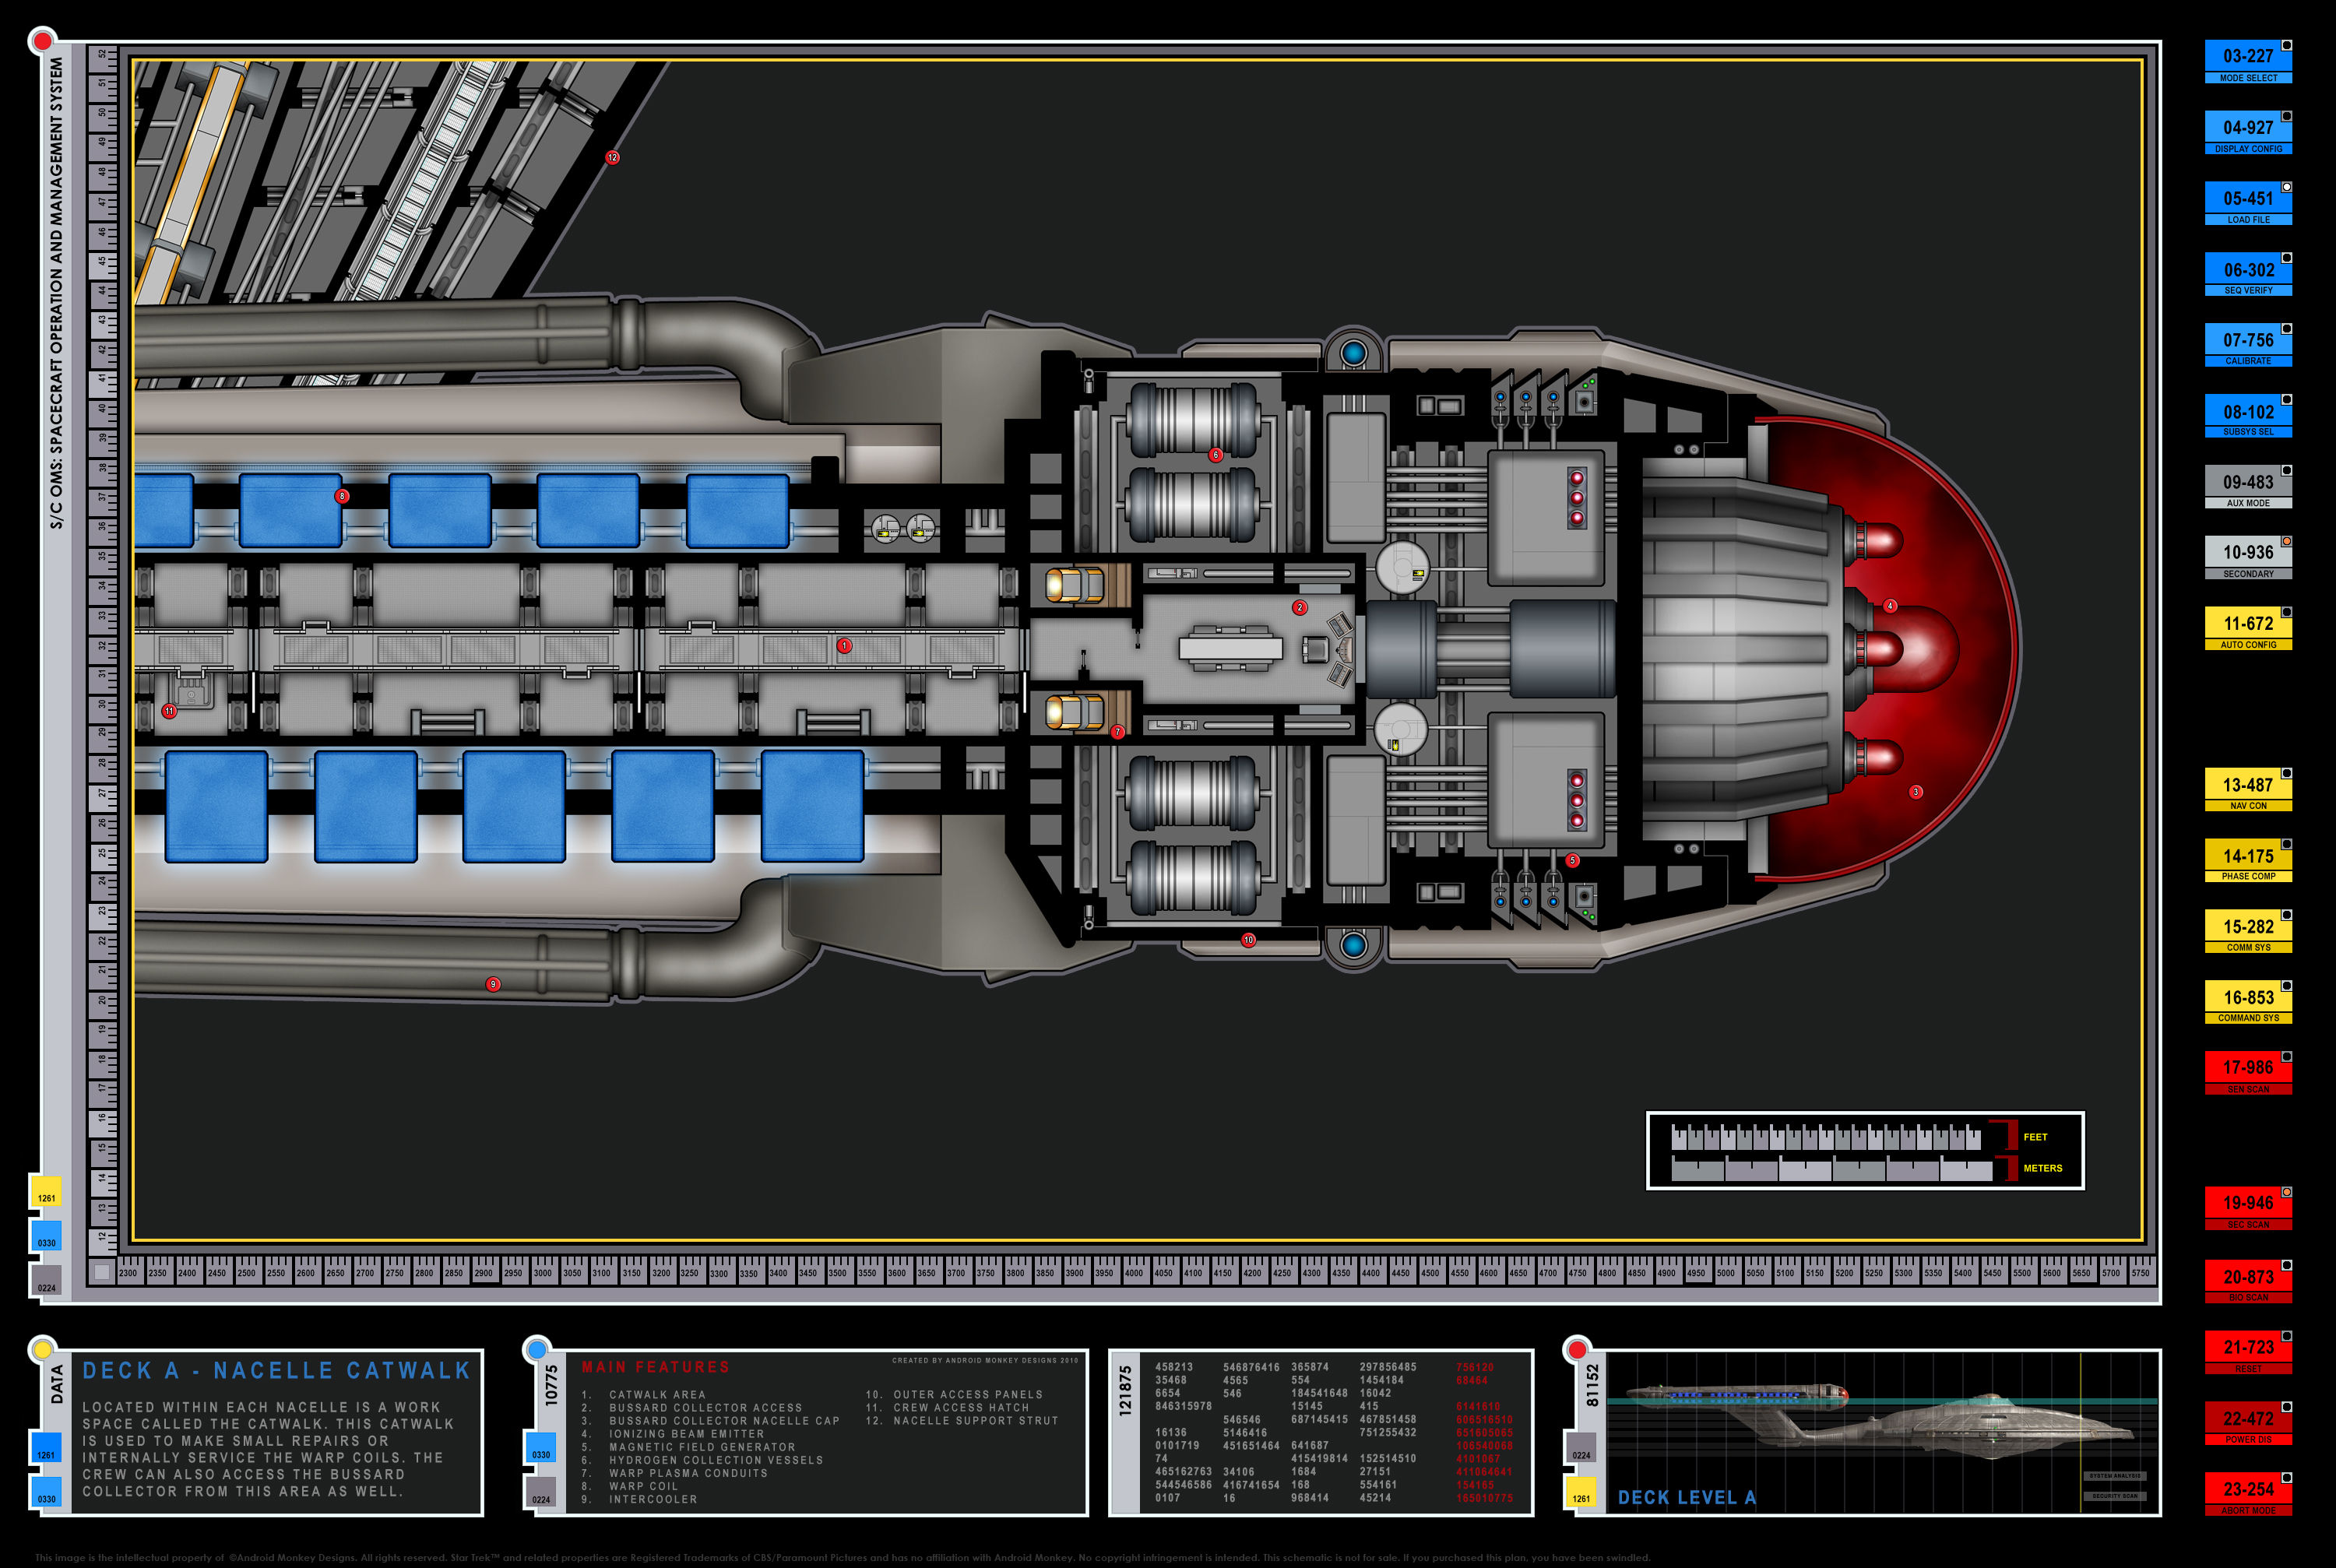 Enterprise NX-01 Deck Plans.